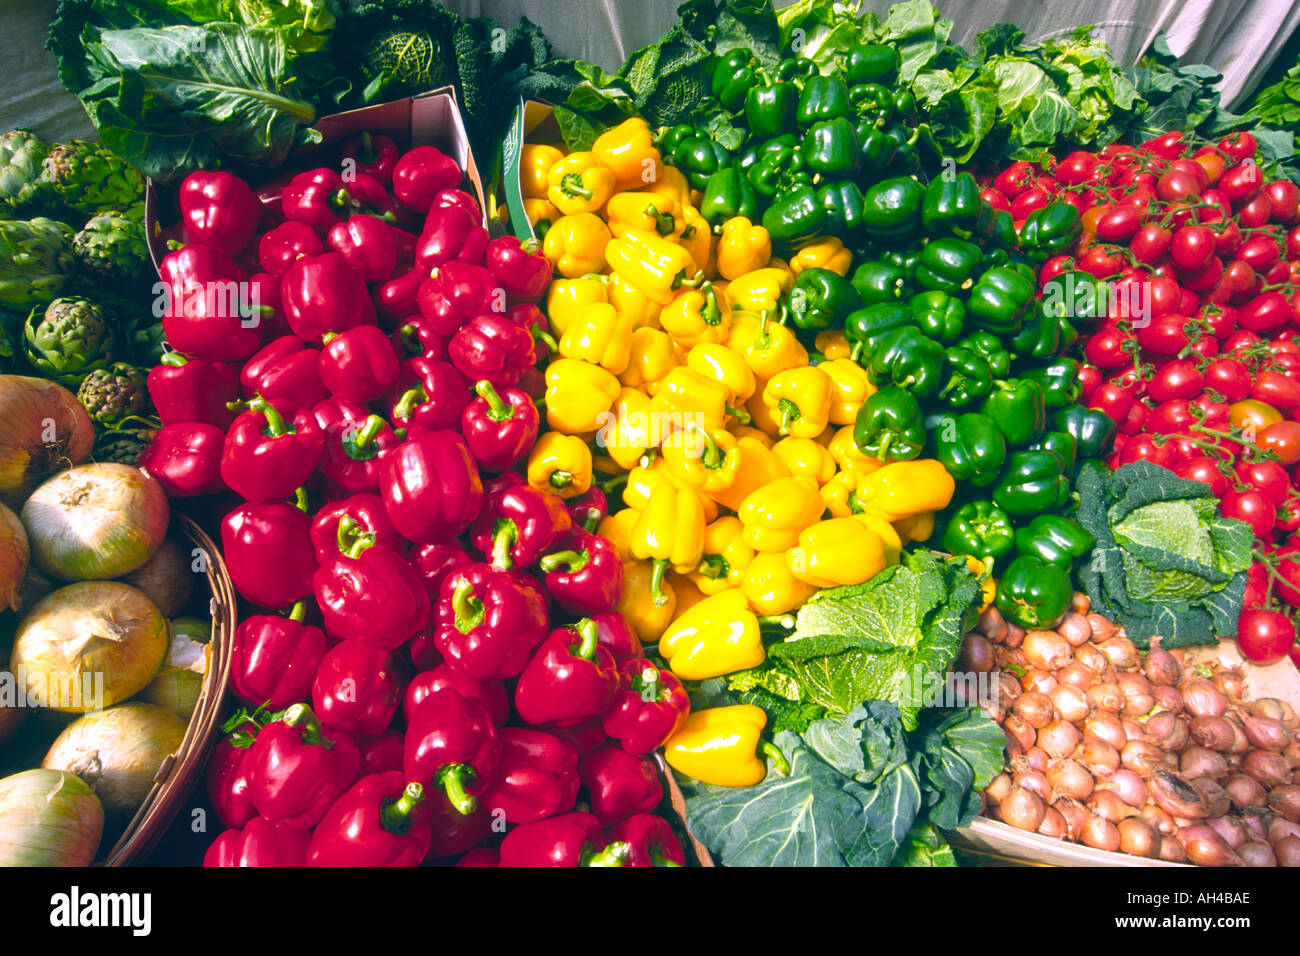 Légumes variés, y compris les oignons, tomates, choux et poivrons rouges, verts et jaunes at a market stall. Banque D'Images